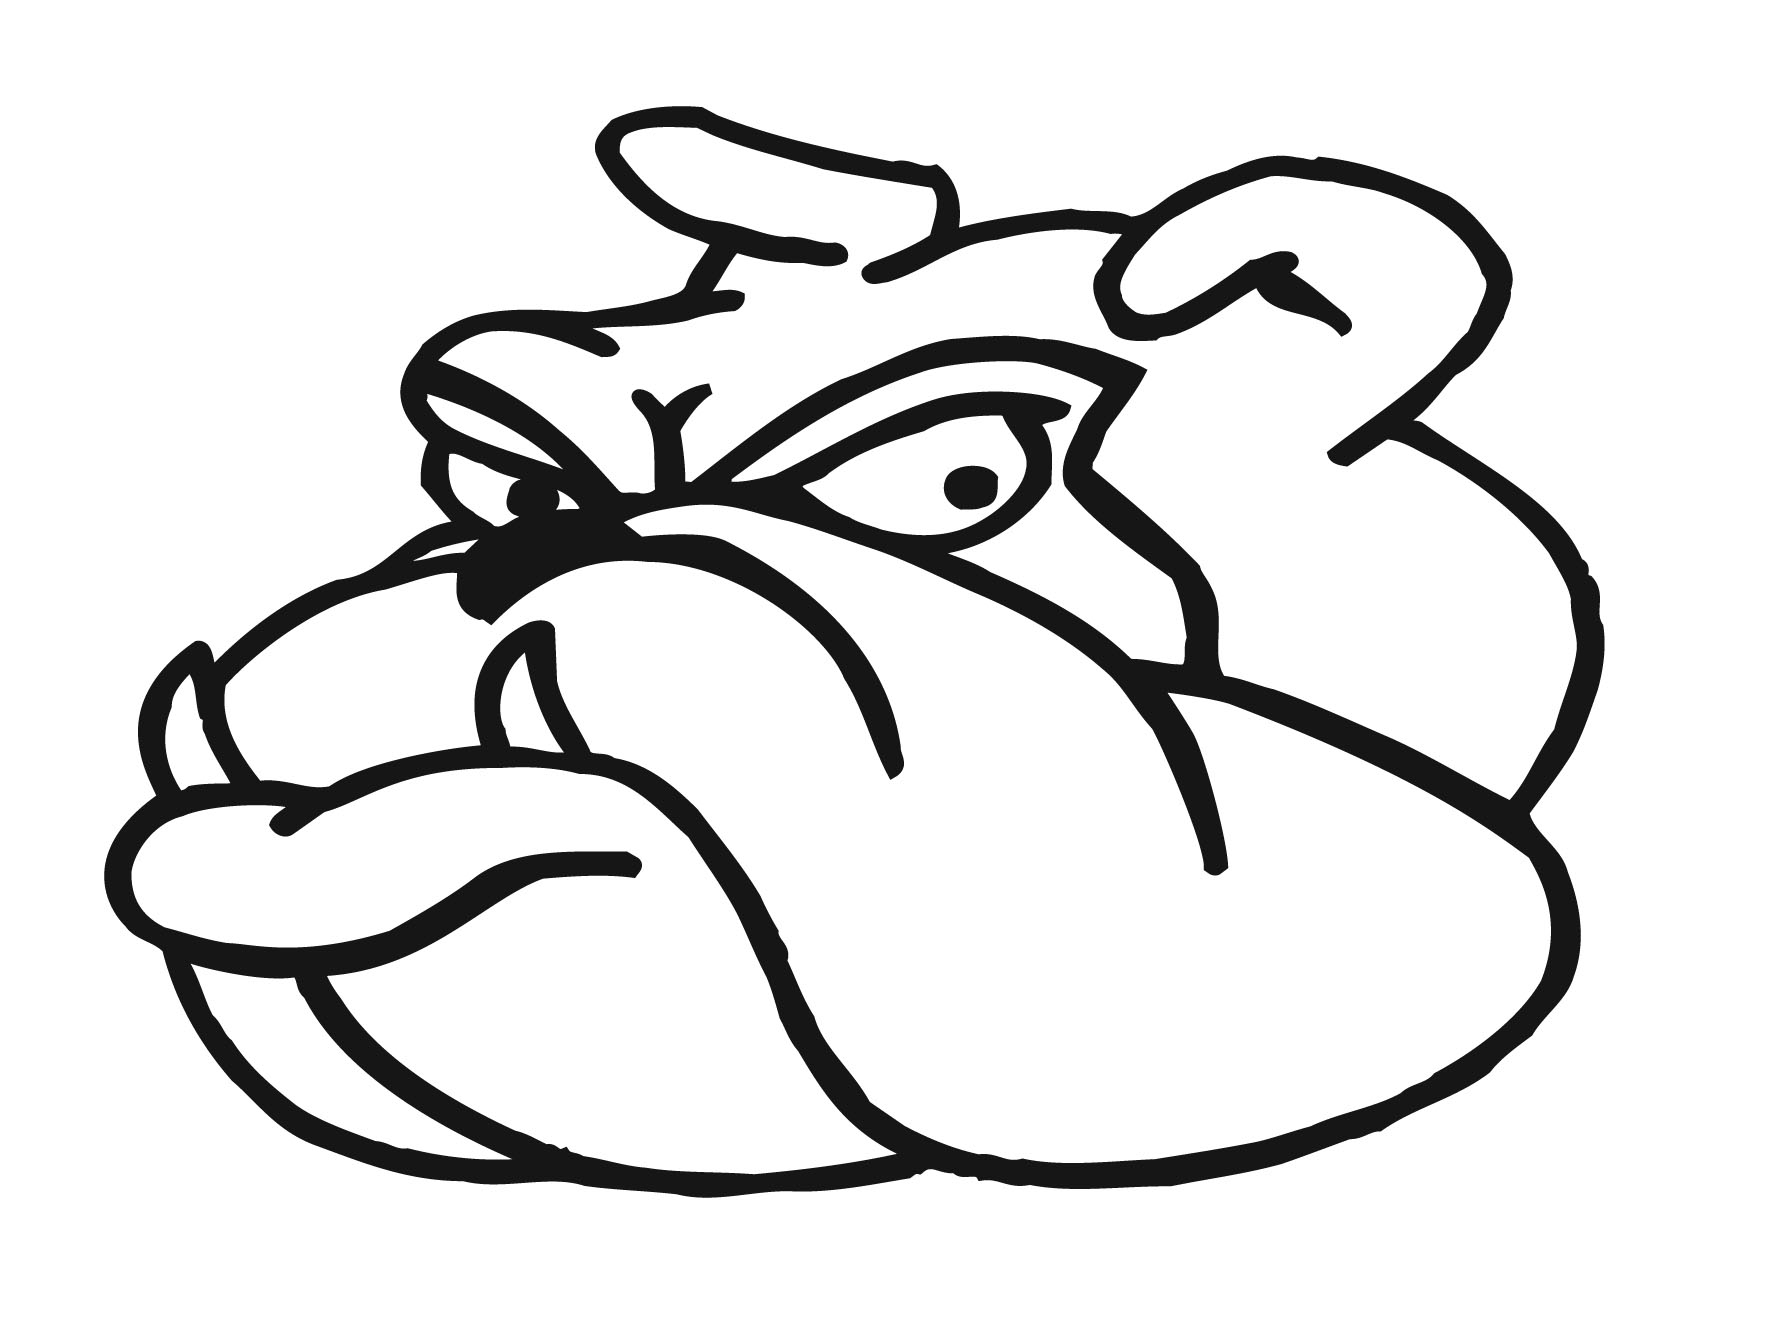 Bulldog Cartoon Clip Art